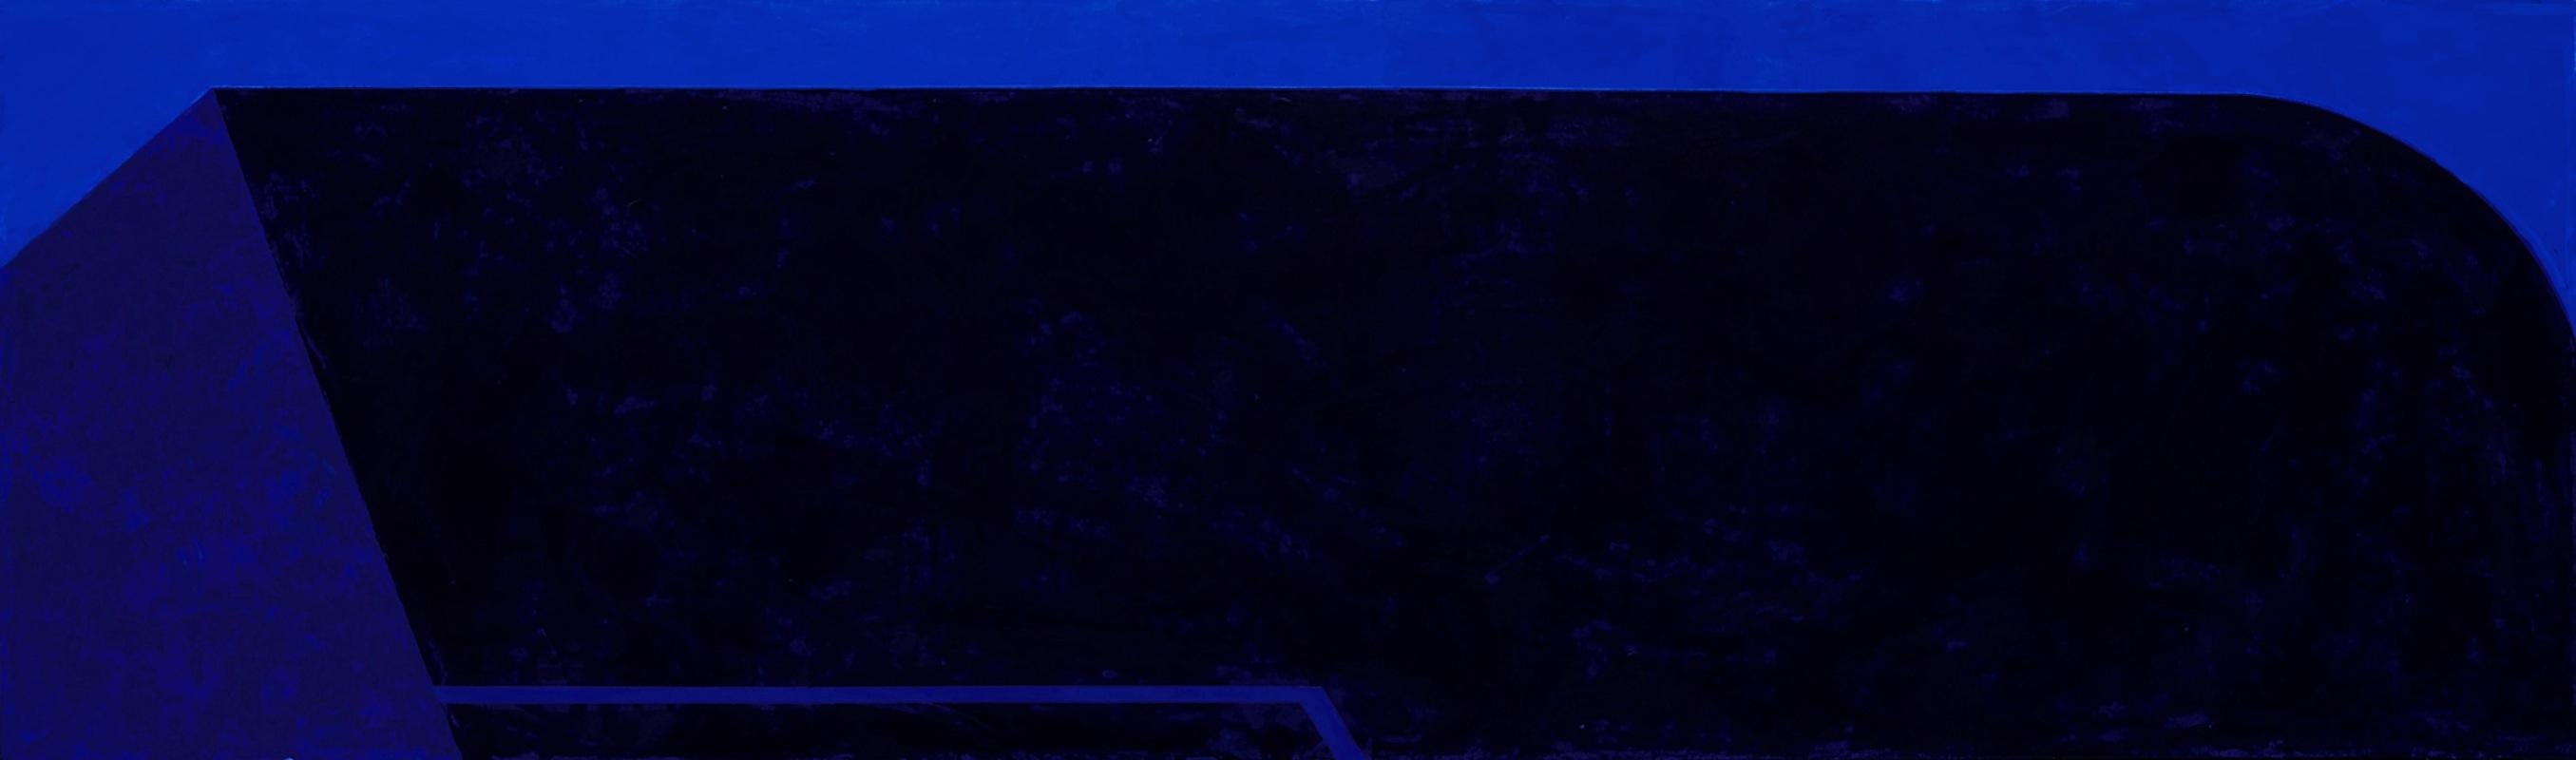 Macyn Bolt, Dark Pool III, acrylic on canvas, Minimalist, 18 x 60, 2018 For Sale 5